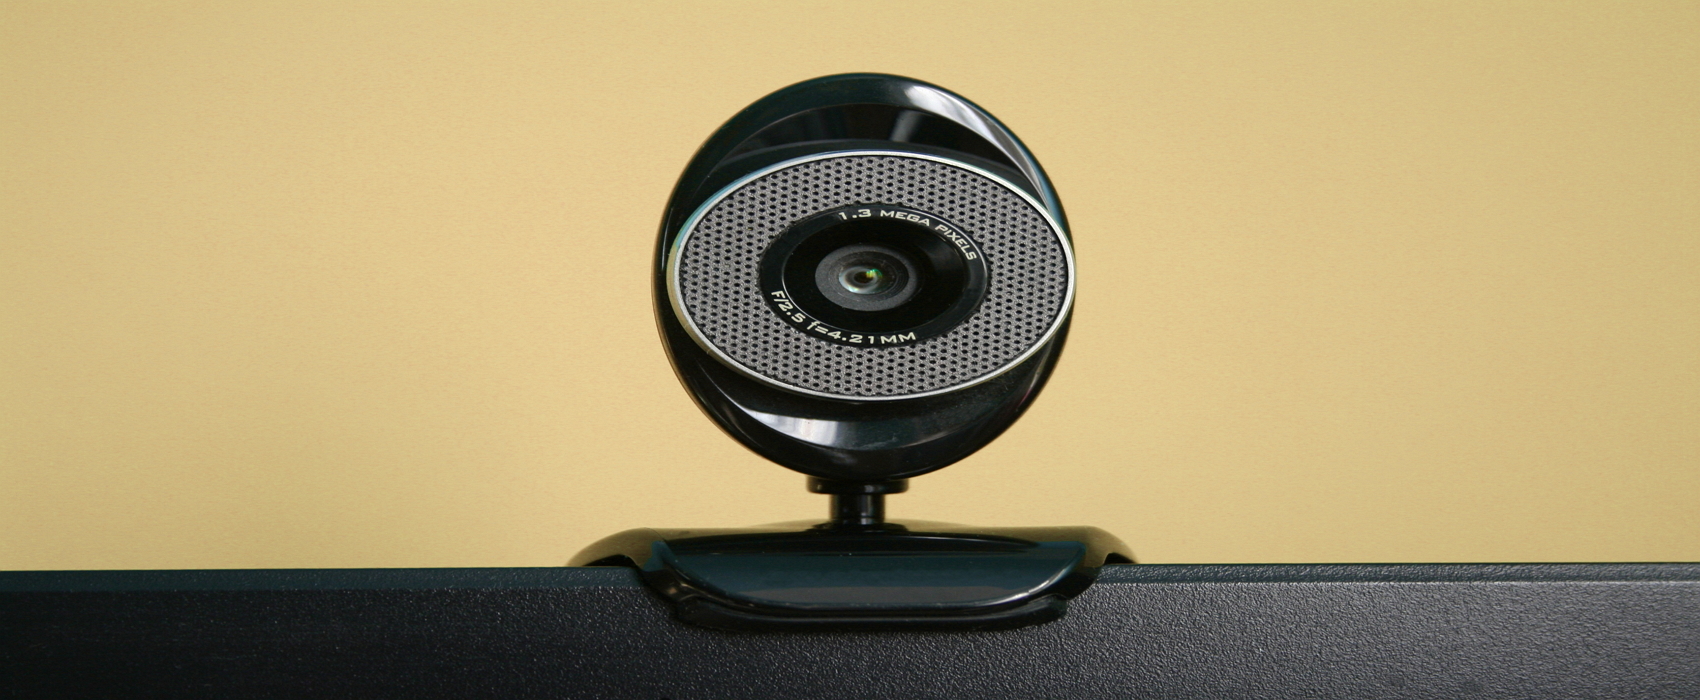 Futura vous explique comment désactiver votre microphone et votre caméra sous Windows 10. © pxhere